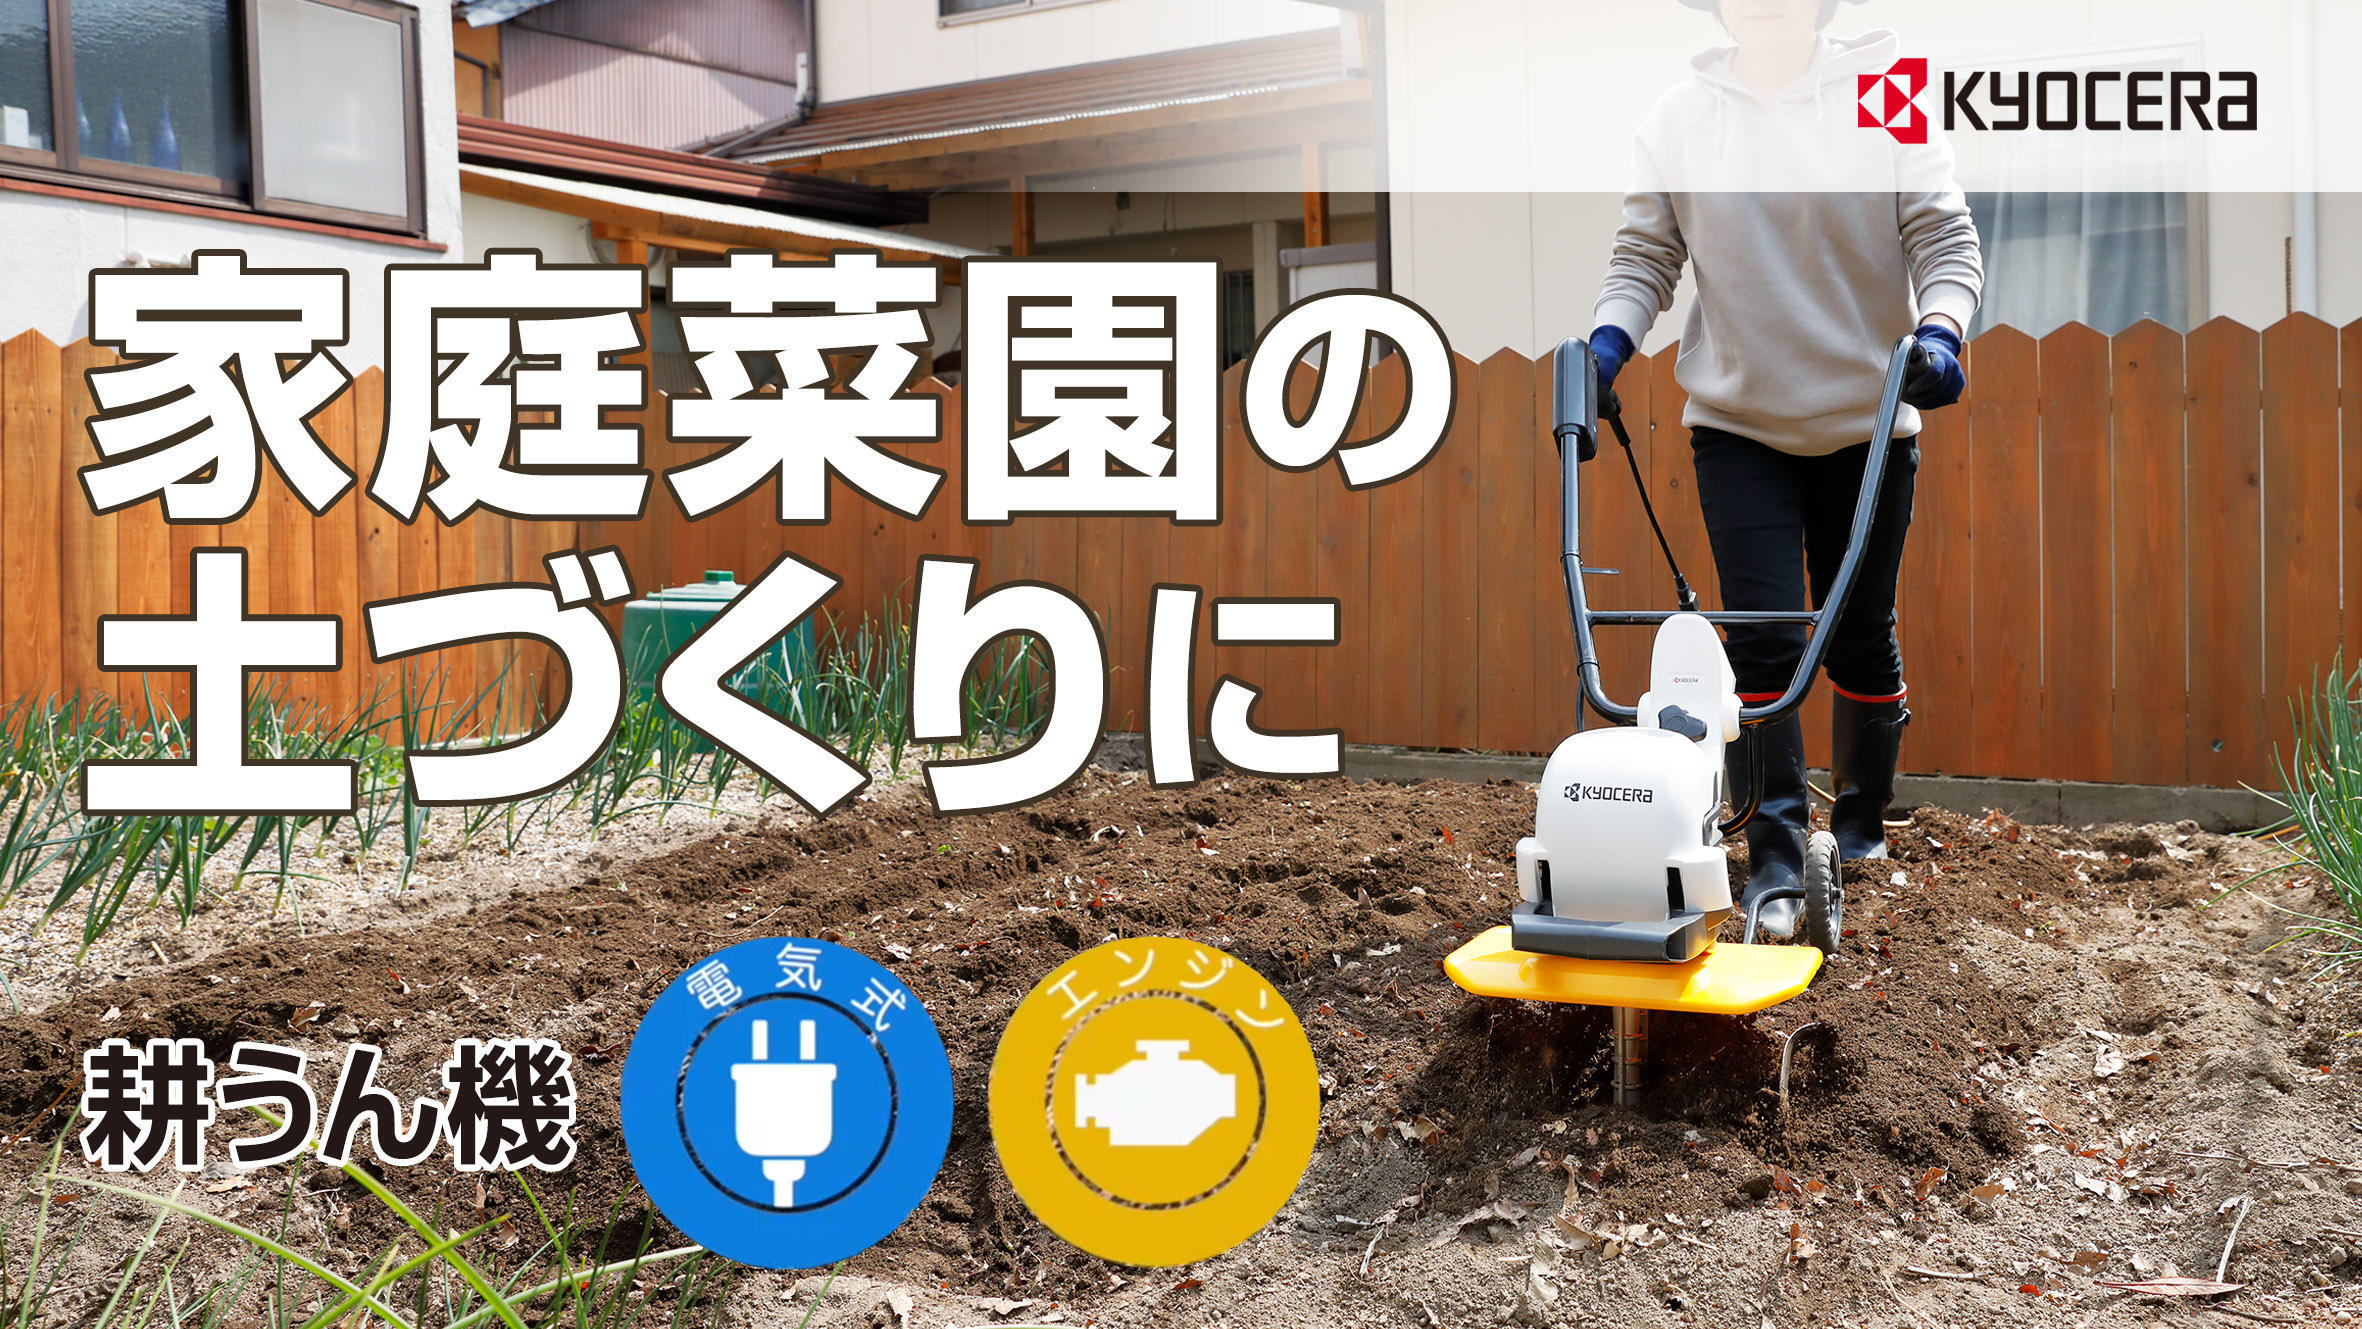 パワフルで扱いやすい「小型耕うん機」。家庭菜園の土づくりに